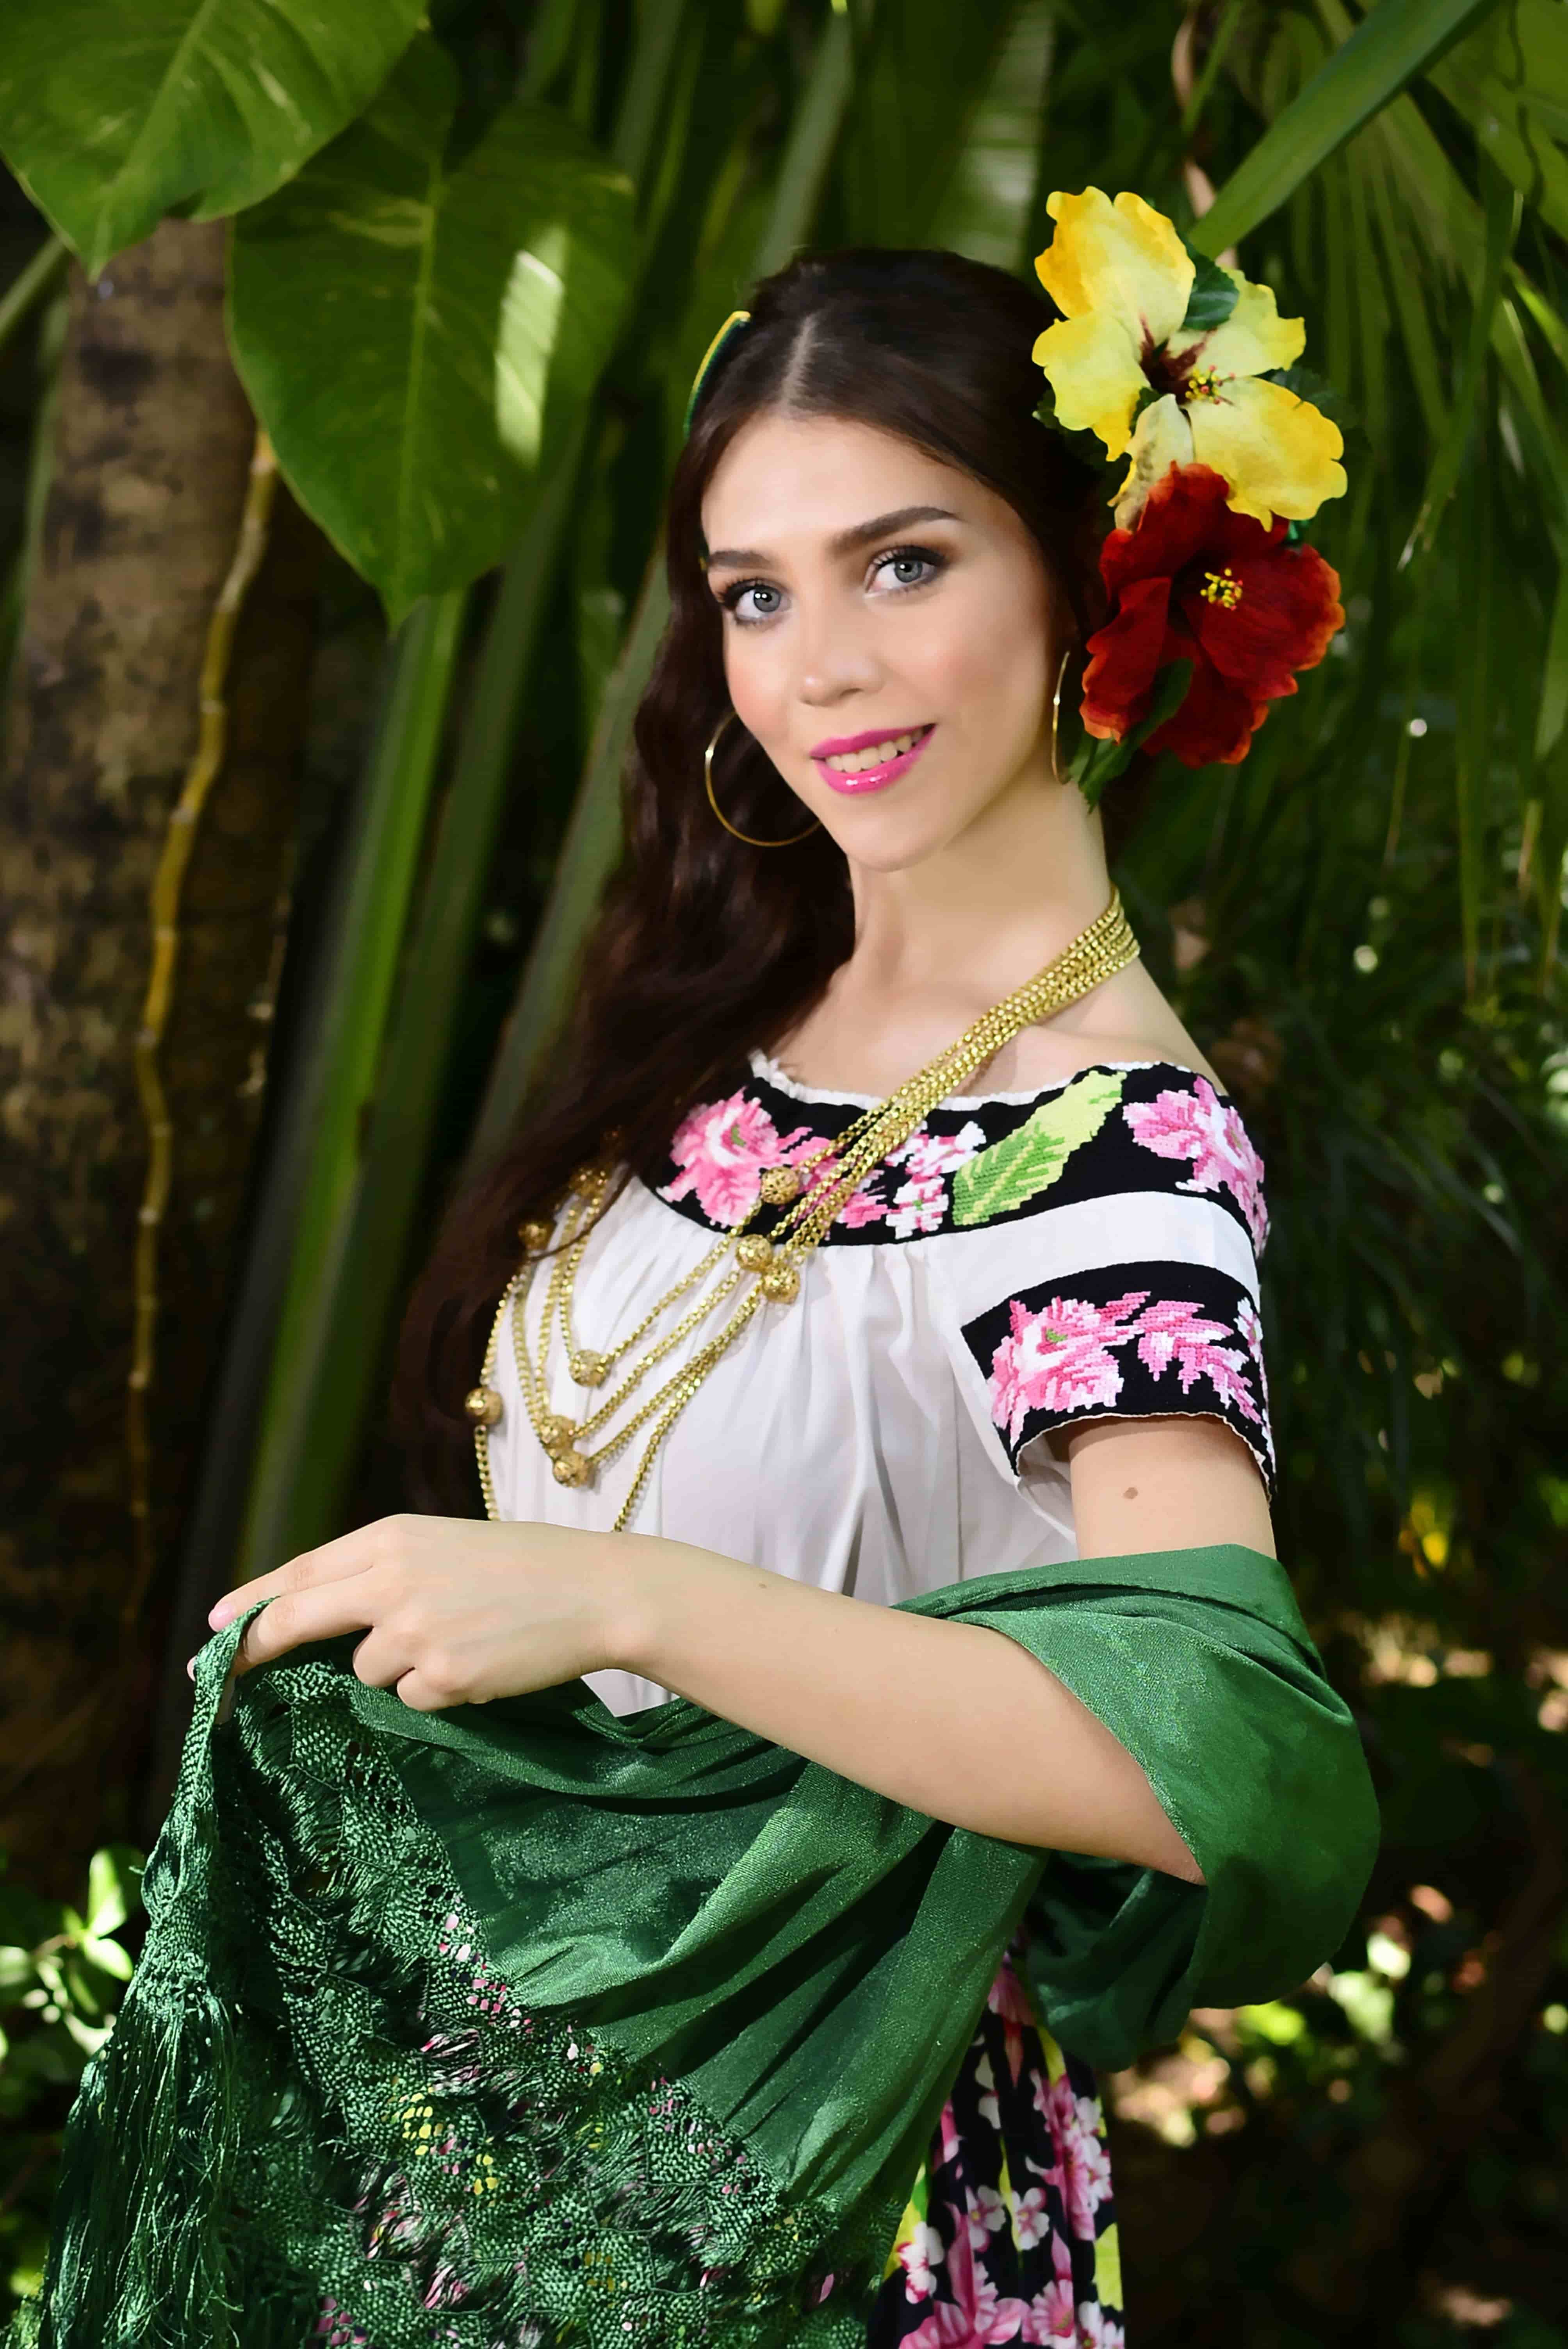 Macuspana; Erika Ximena Ramírez Aranda